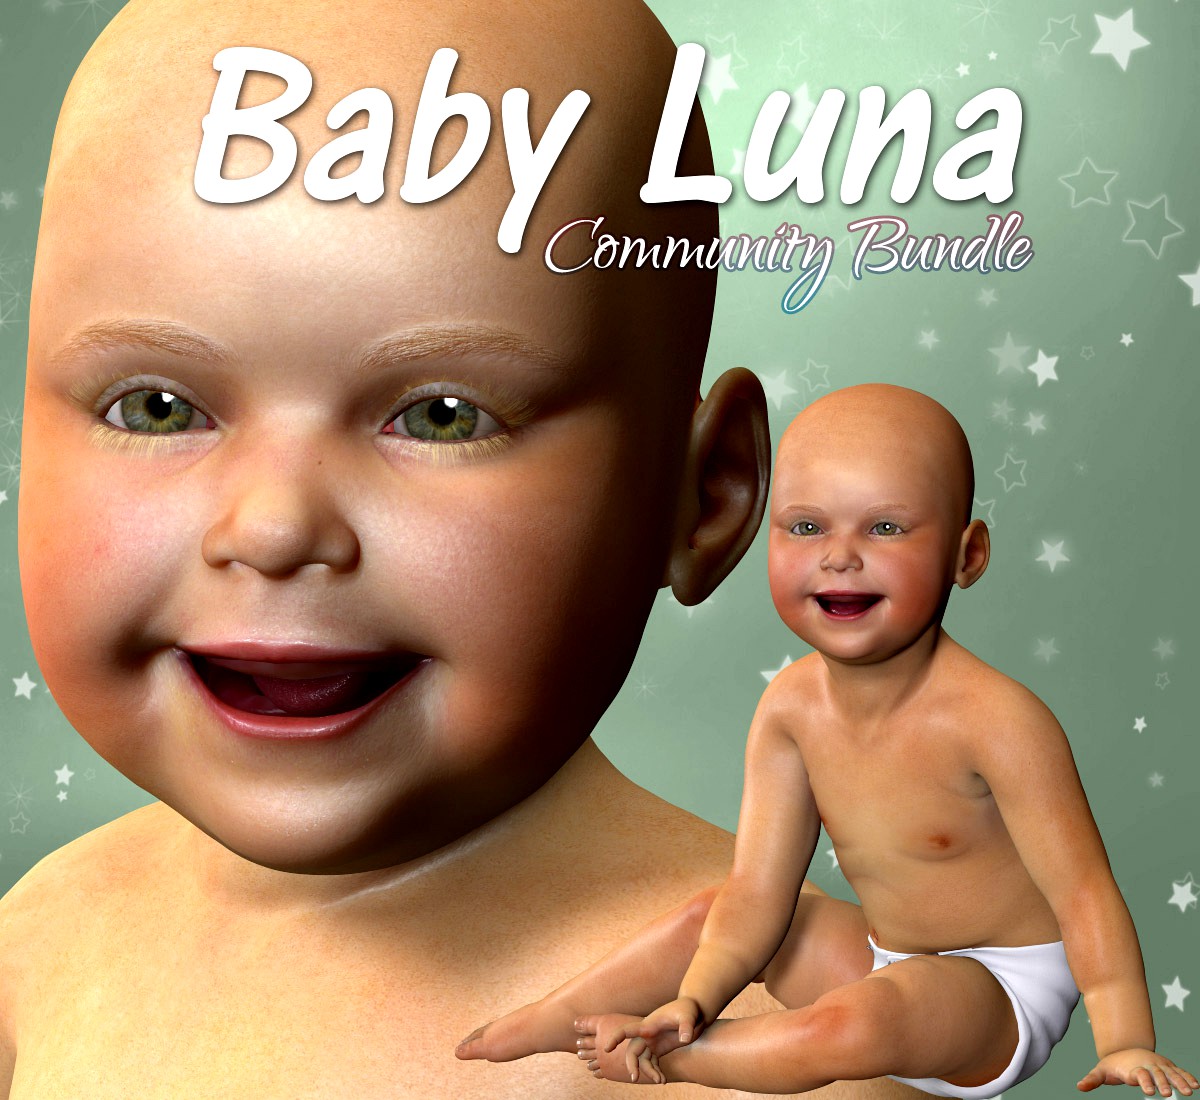 Baby Luna Community Bundle